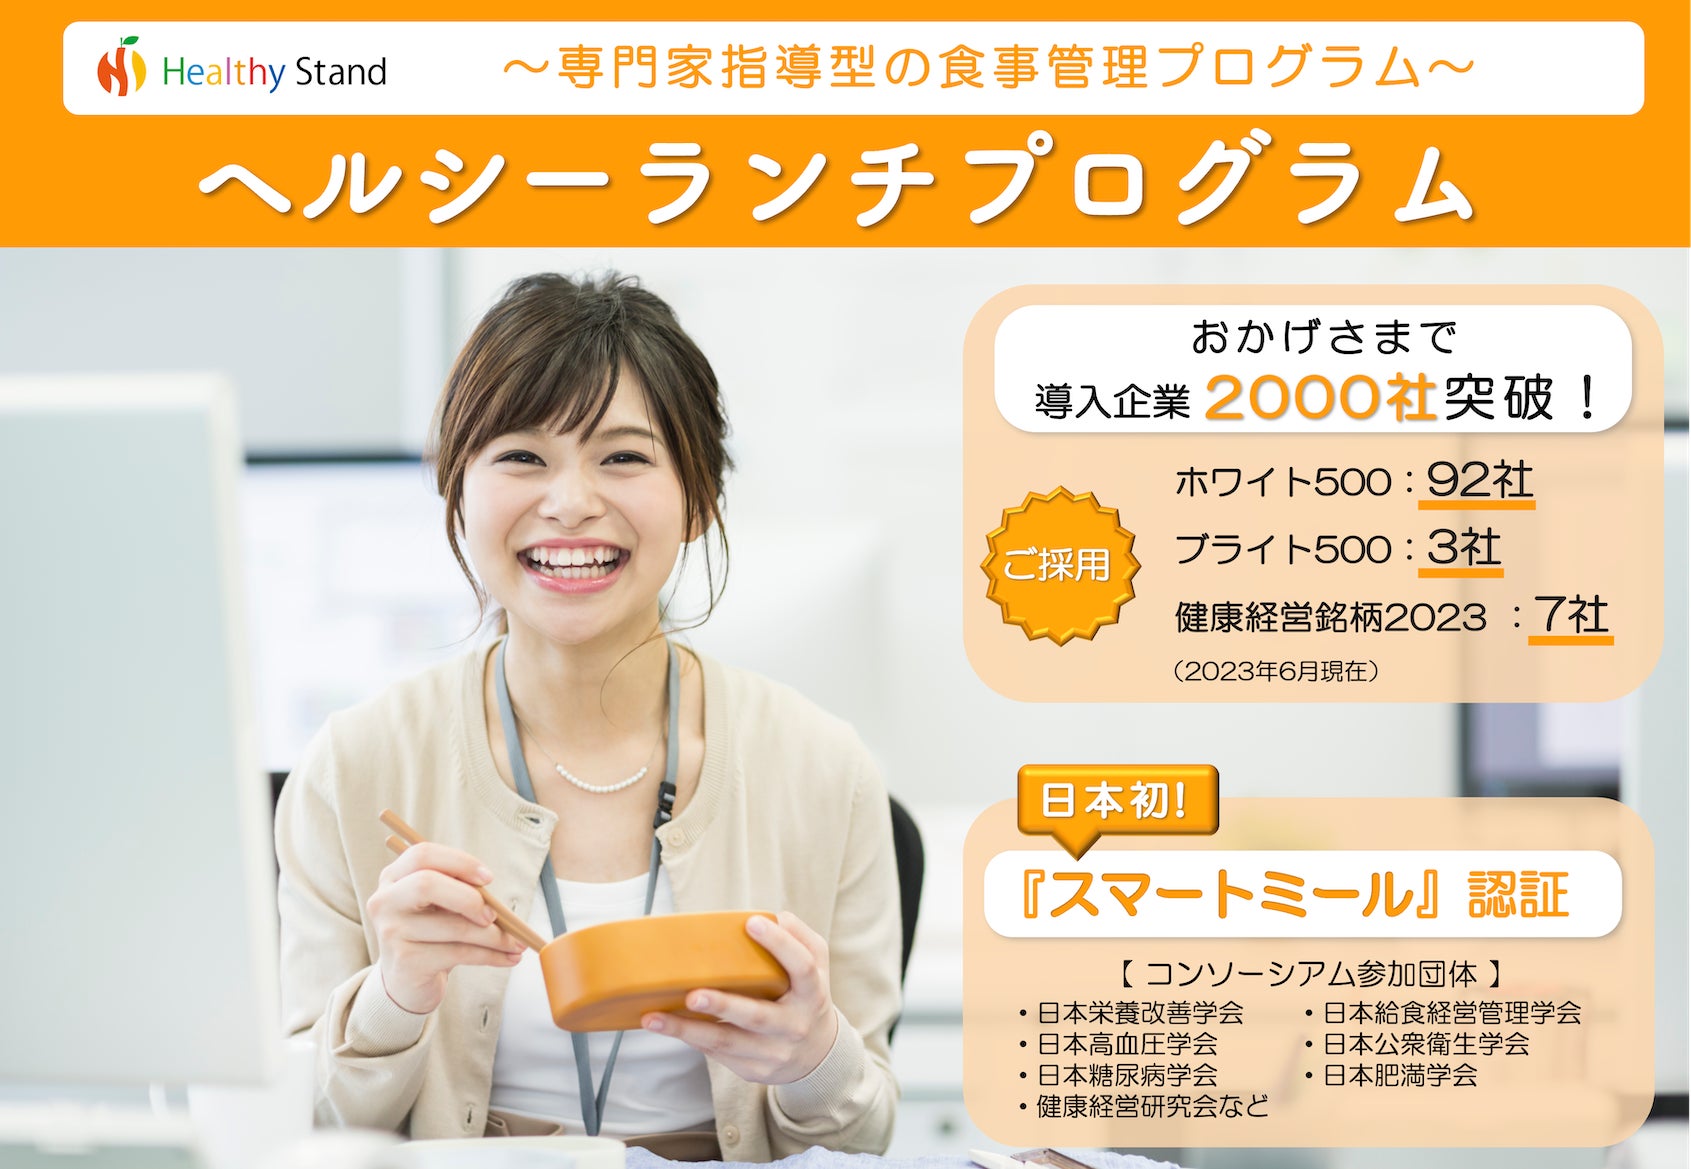 日本初*1進化するAI美顔器『HAKEI（ハケイ）』を体験できるPOPUPイベント Cosmetic Bar “HAKEI”（ハケイ）2023年6月21日(水)～6月25日(日)の5日間